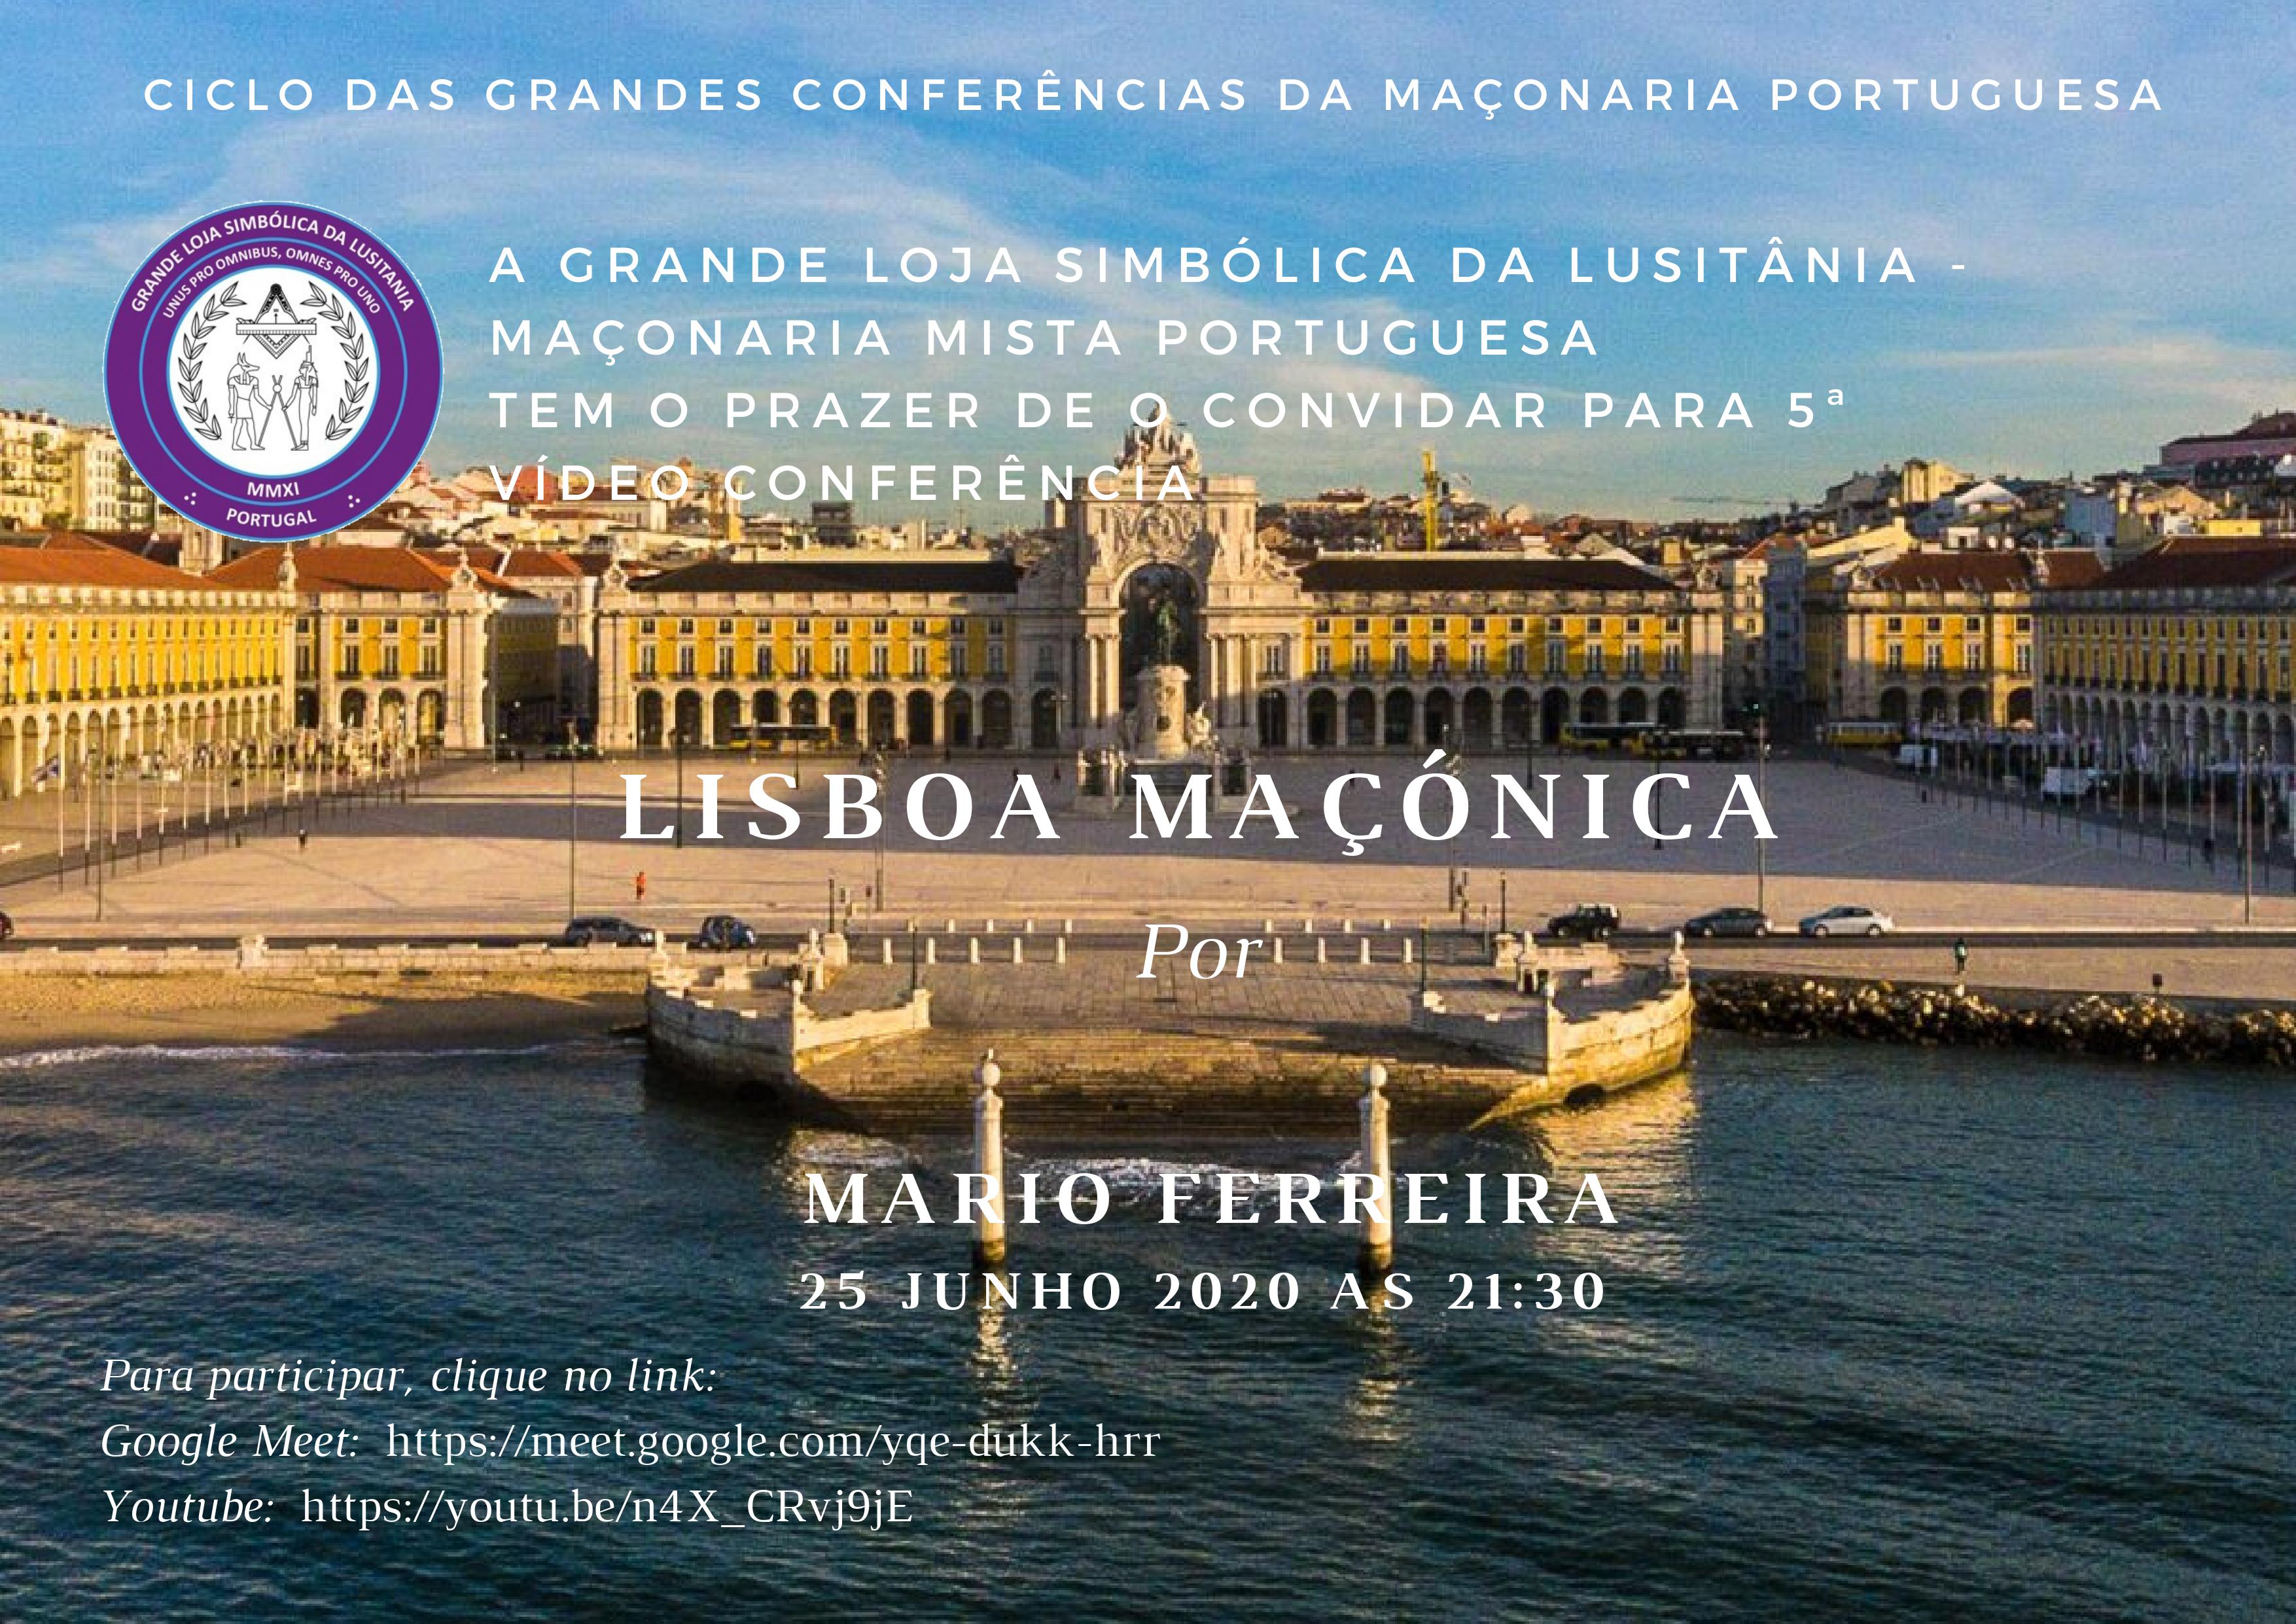 Ciclo de Conferências Lisboa Maçónica - Grande Loja Simbólica da Lusitania - Maçonaria Mista Portuguesa.jpg